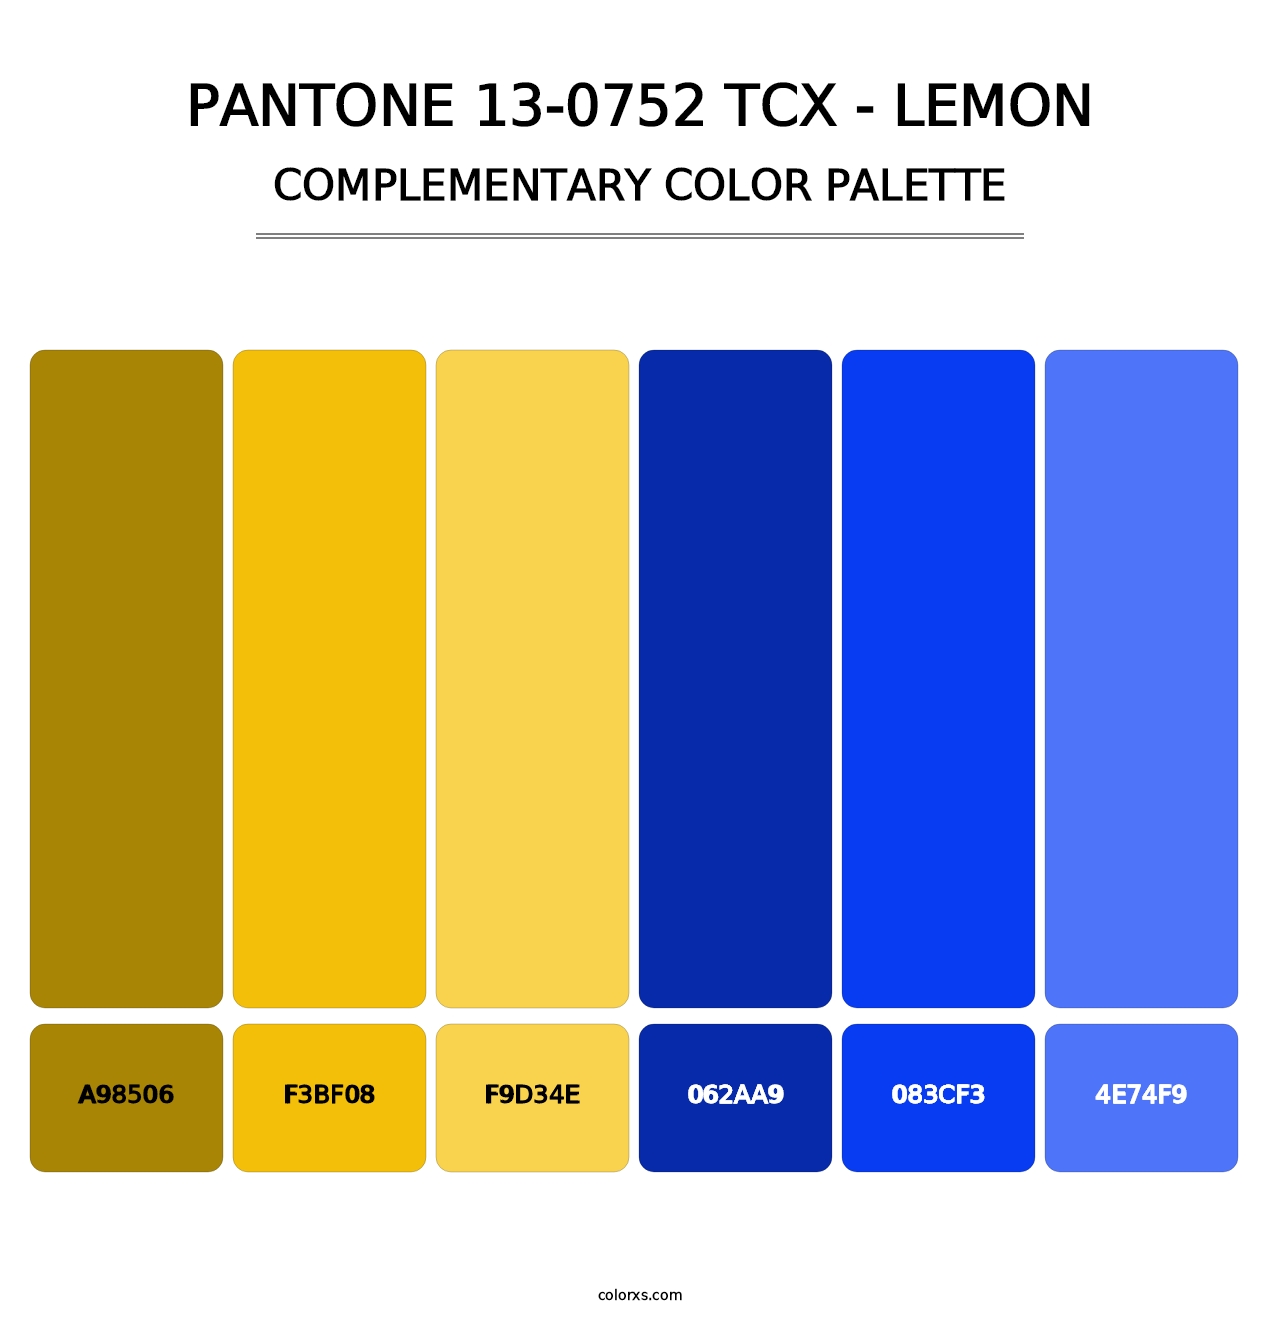 PANTONE 13-0752 TCX - Lemon - Complementary Color Palette